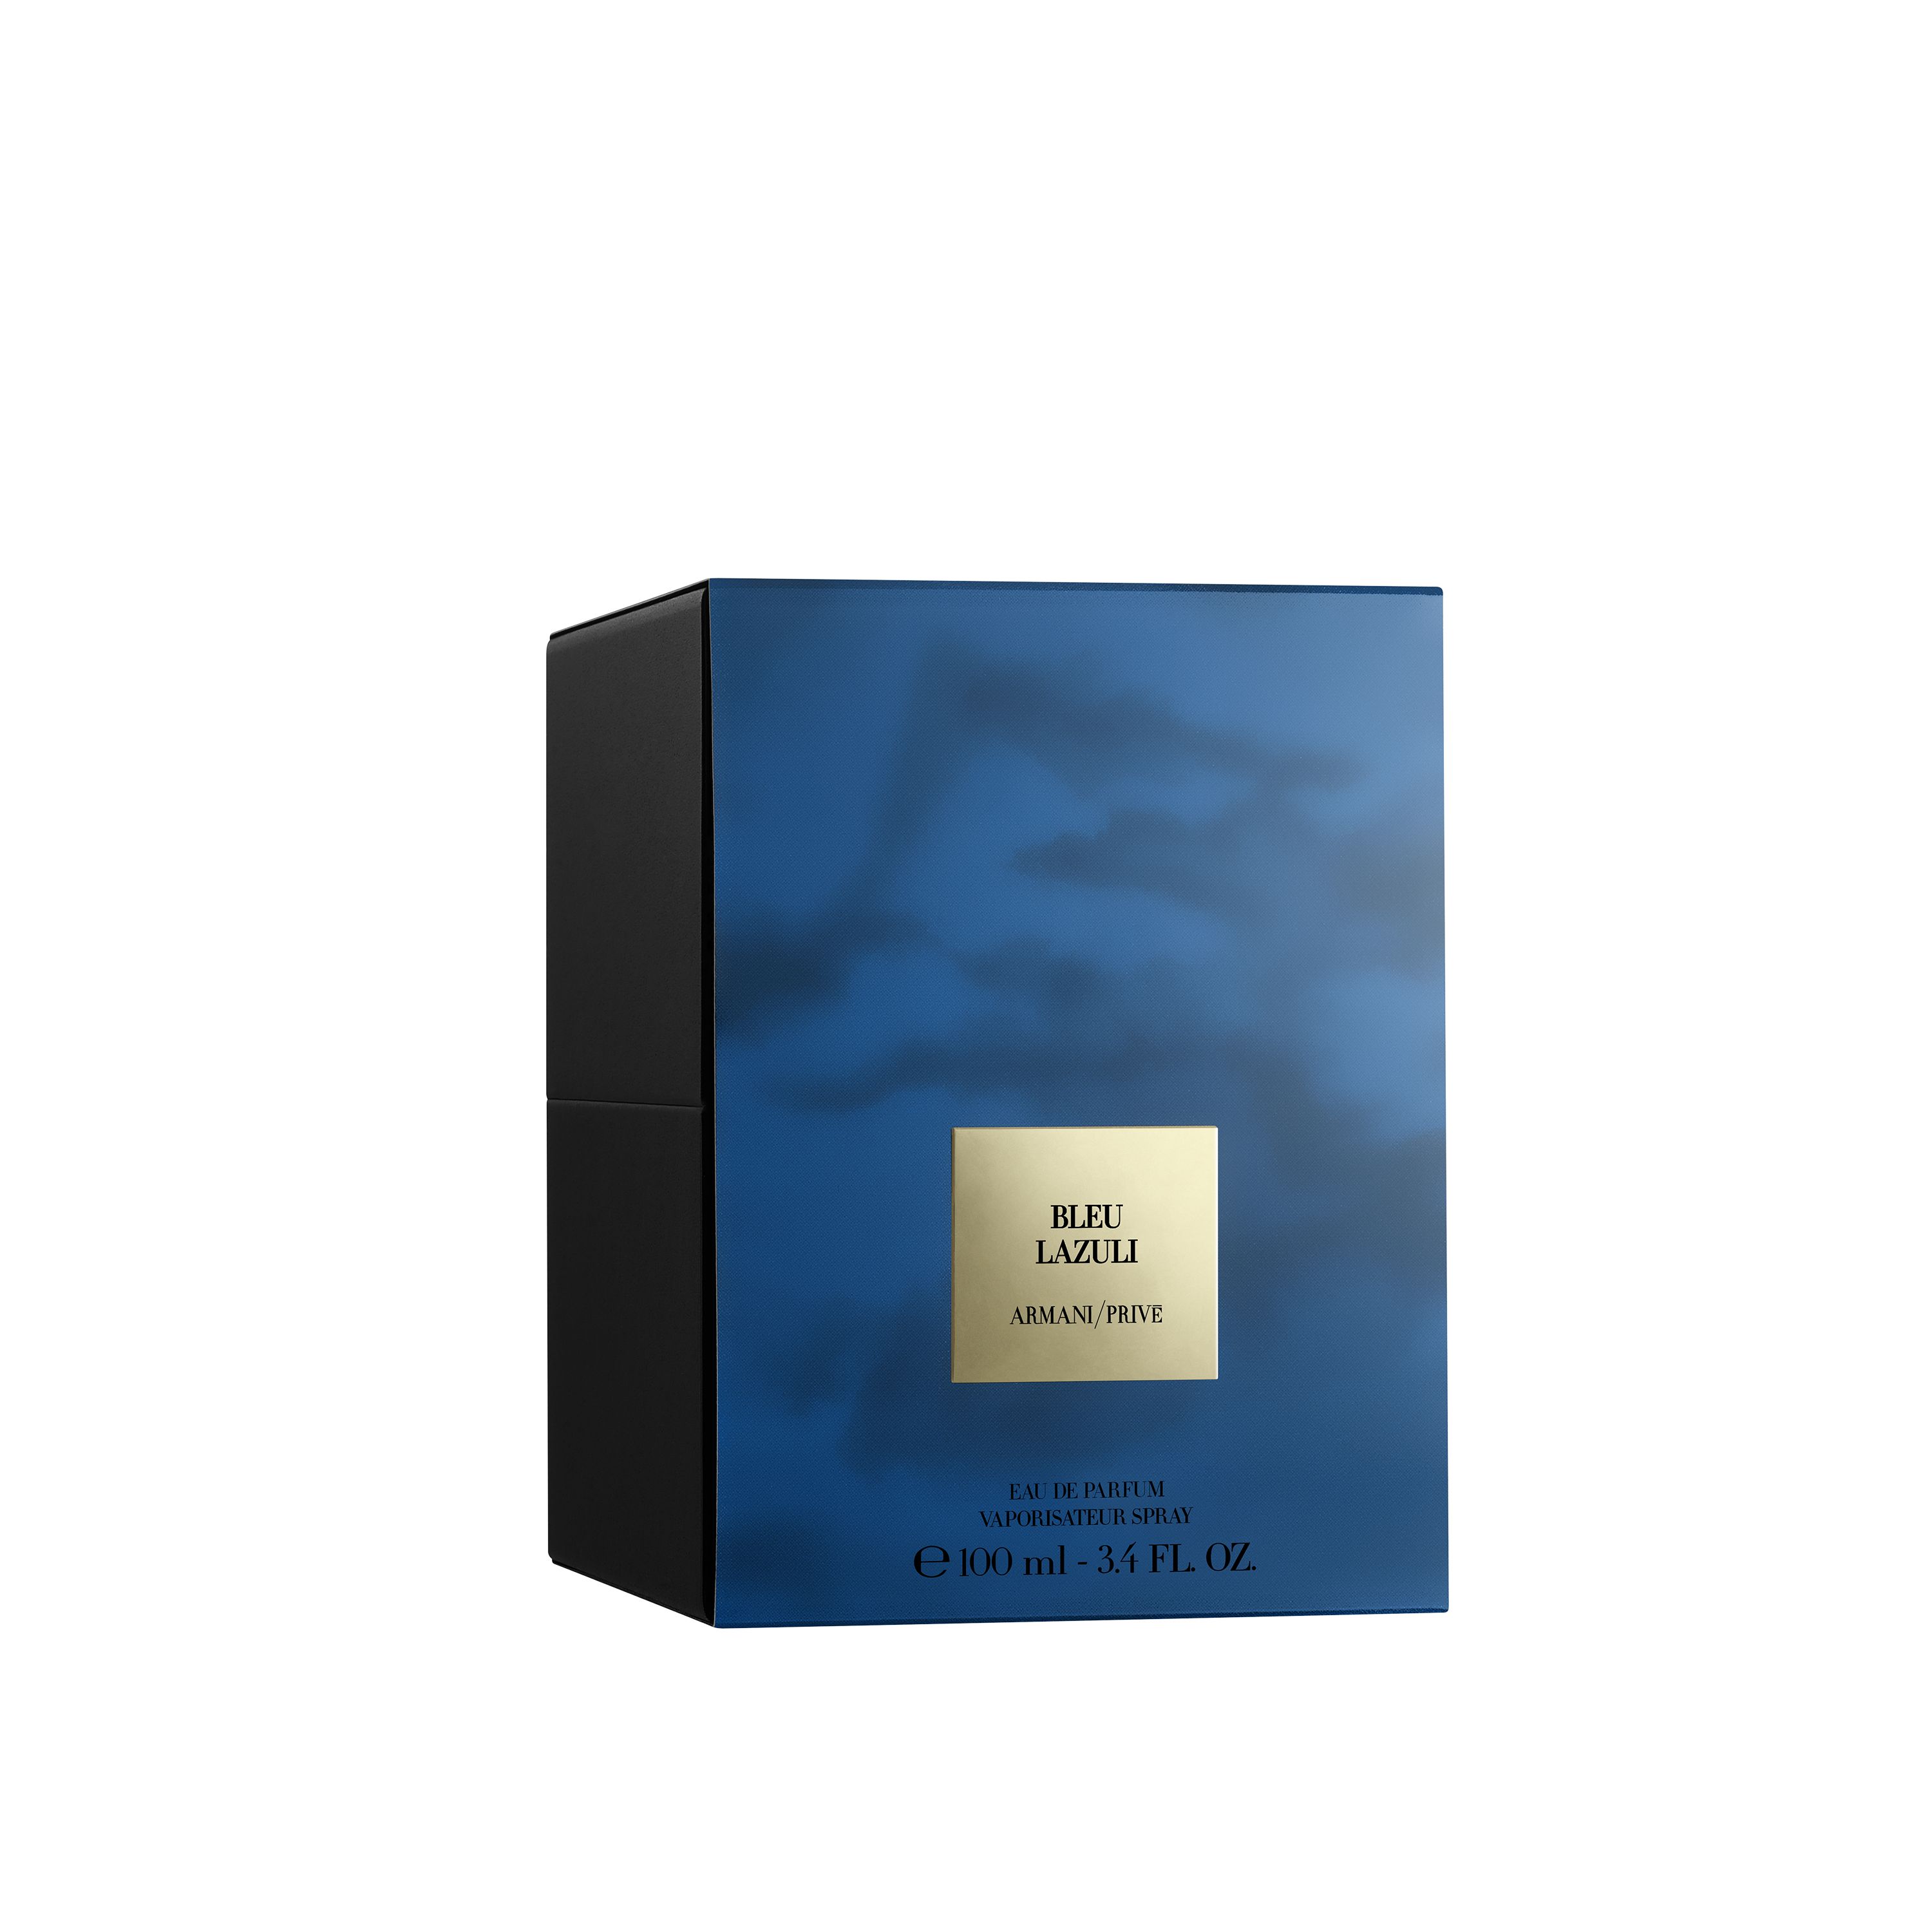 Giorgio Armani Prive Bleu Lazuli Eau de Parfum 3.4 oz/100 ml Spray.